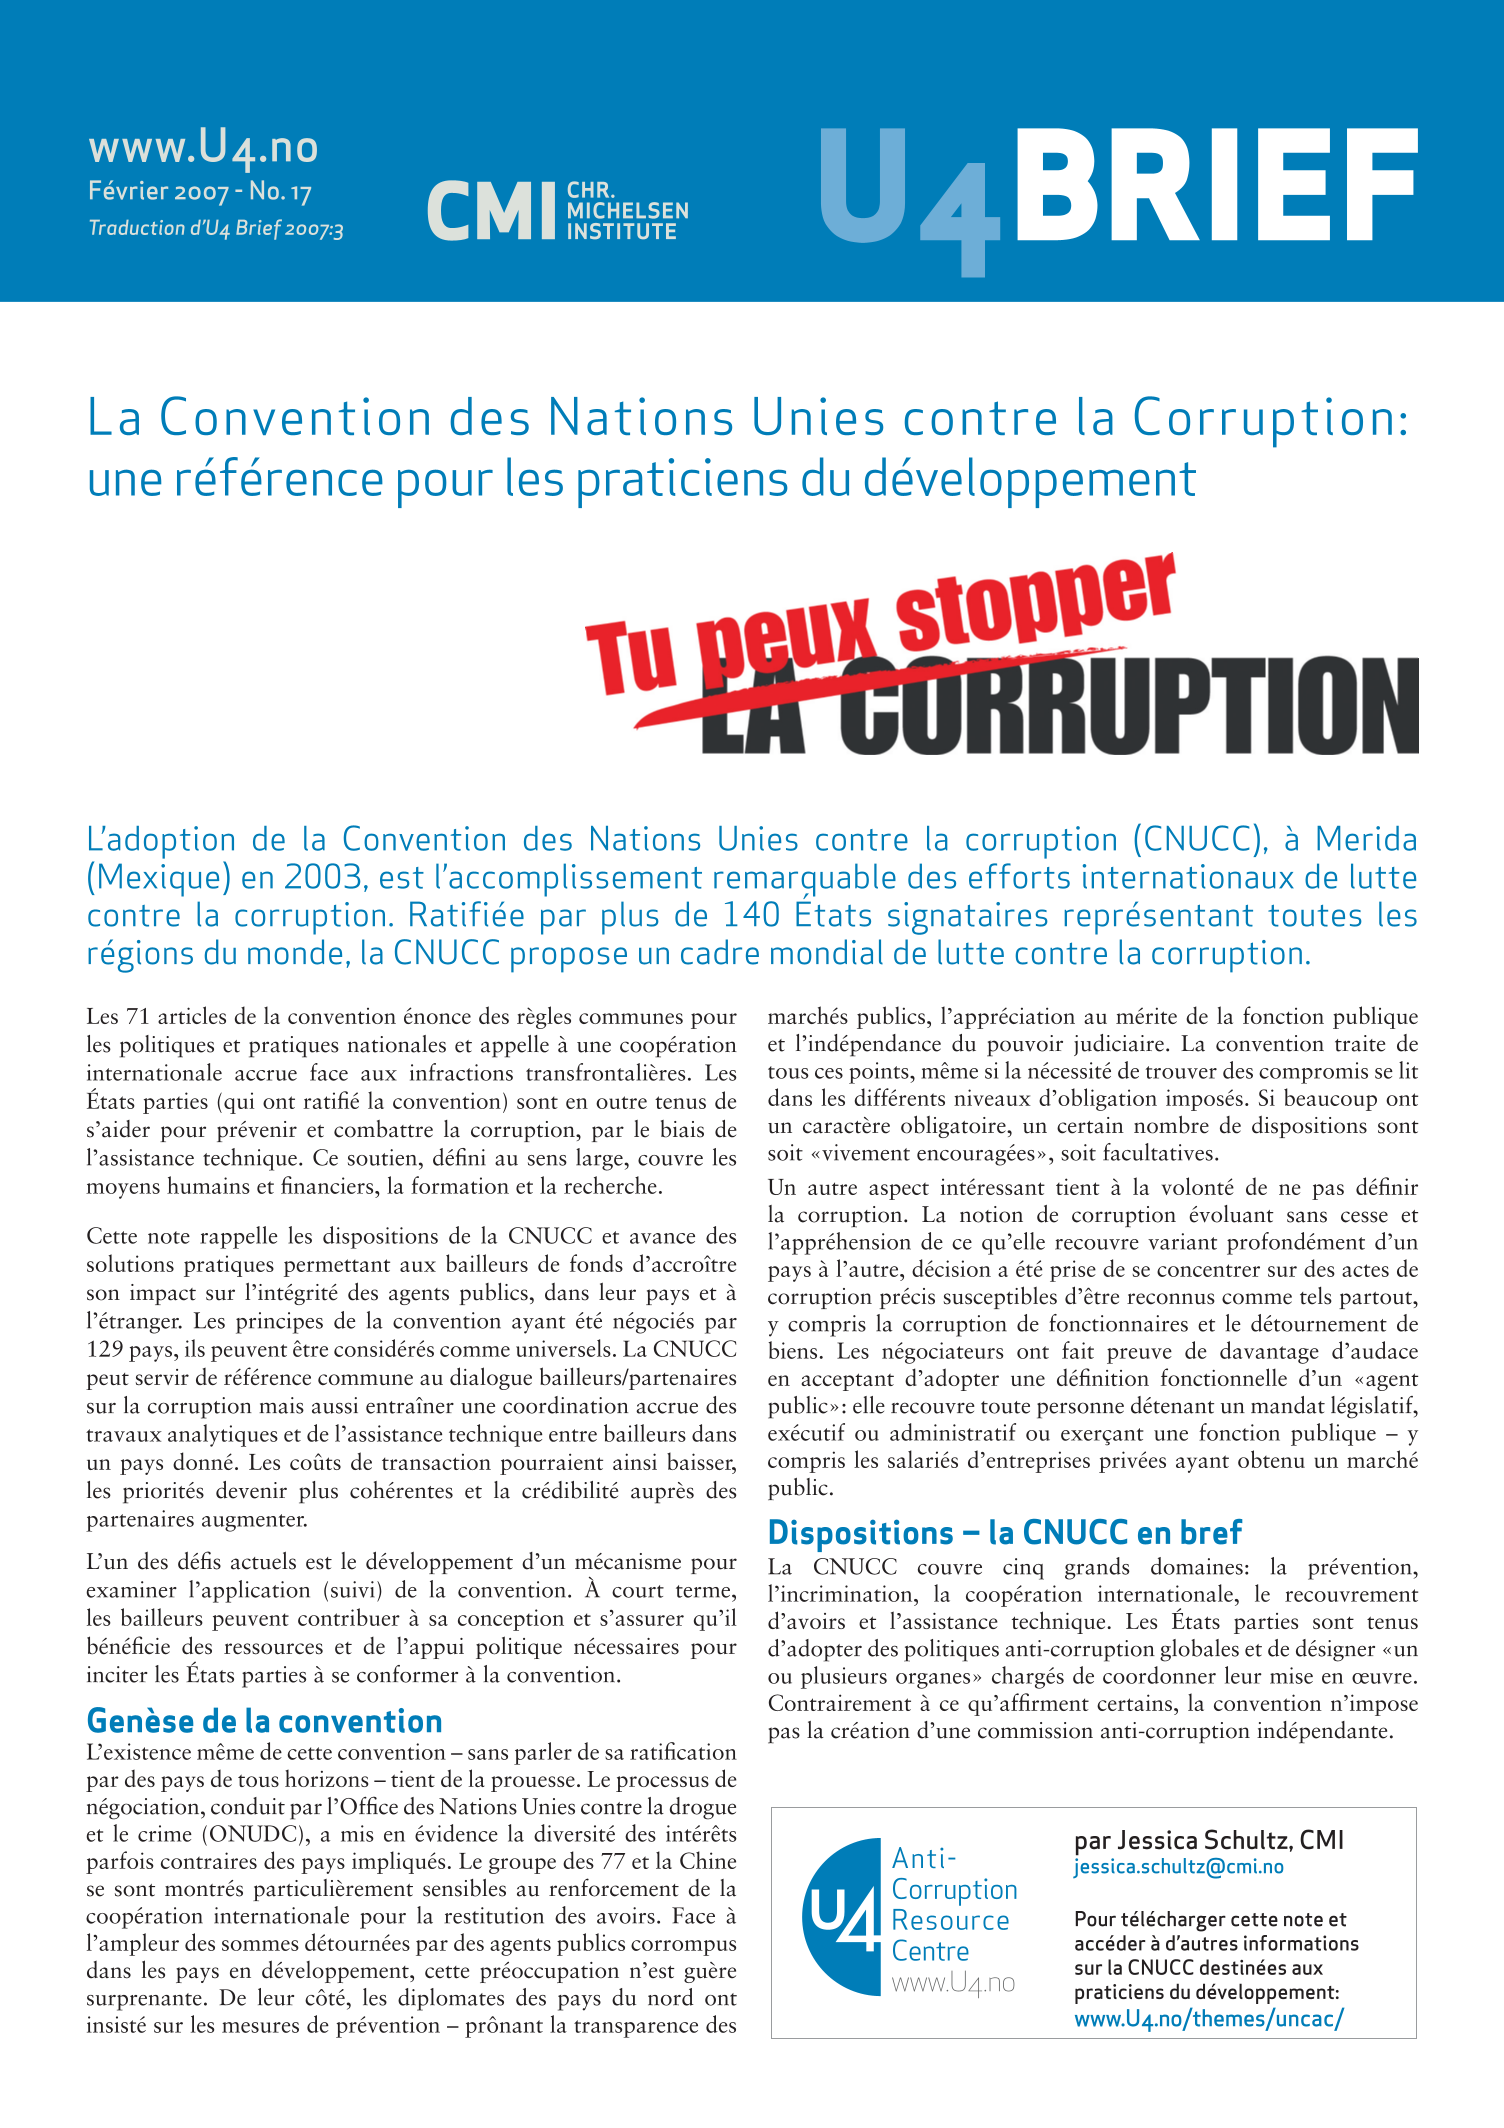 La Convention des Nations Unies contre la Corruption:  une référence pour les praticiens du développement